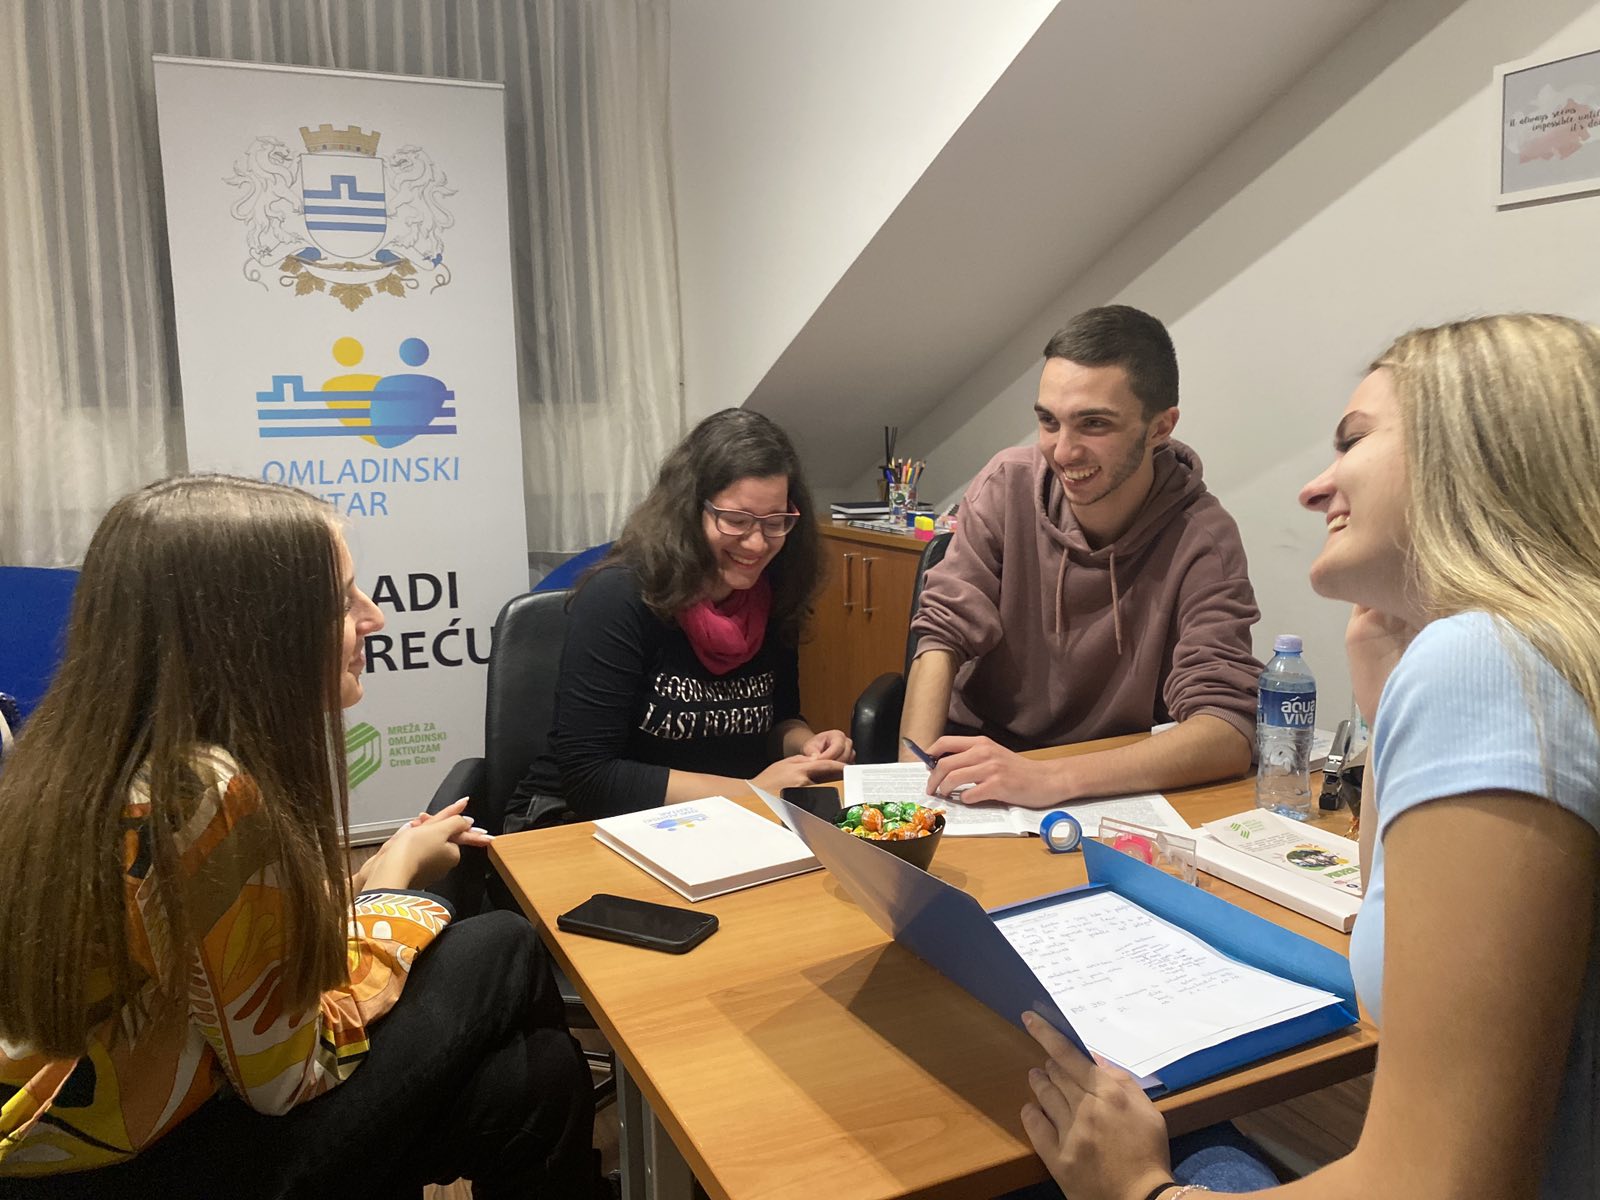 Omladinski klub; Mjesto za druženje i edukaciju mladih u centru Podgorice